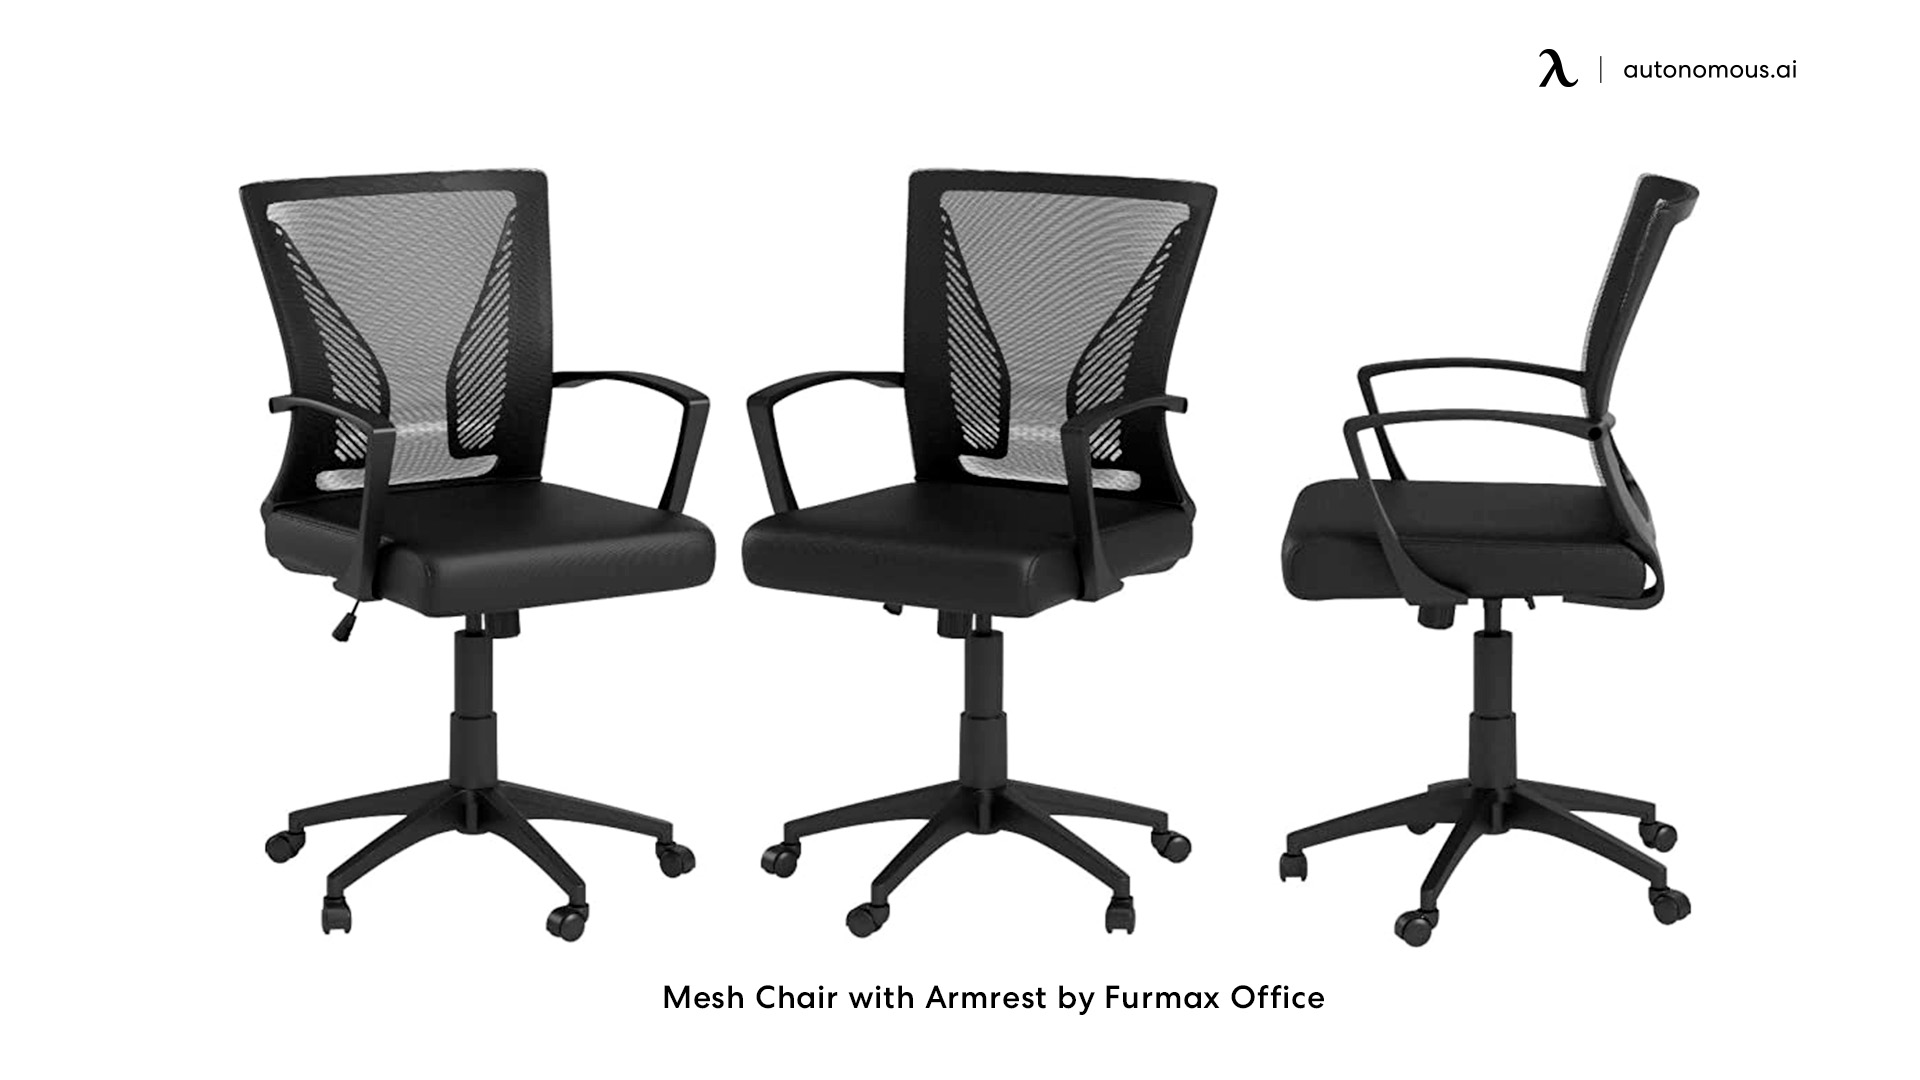 Furmax Office office chair deals